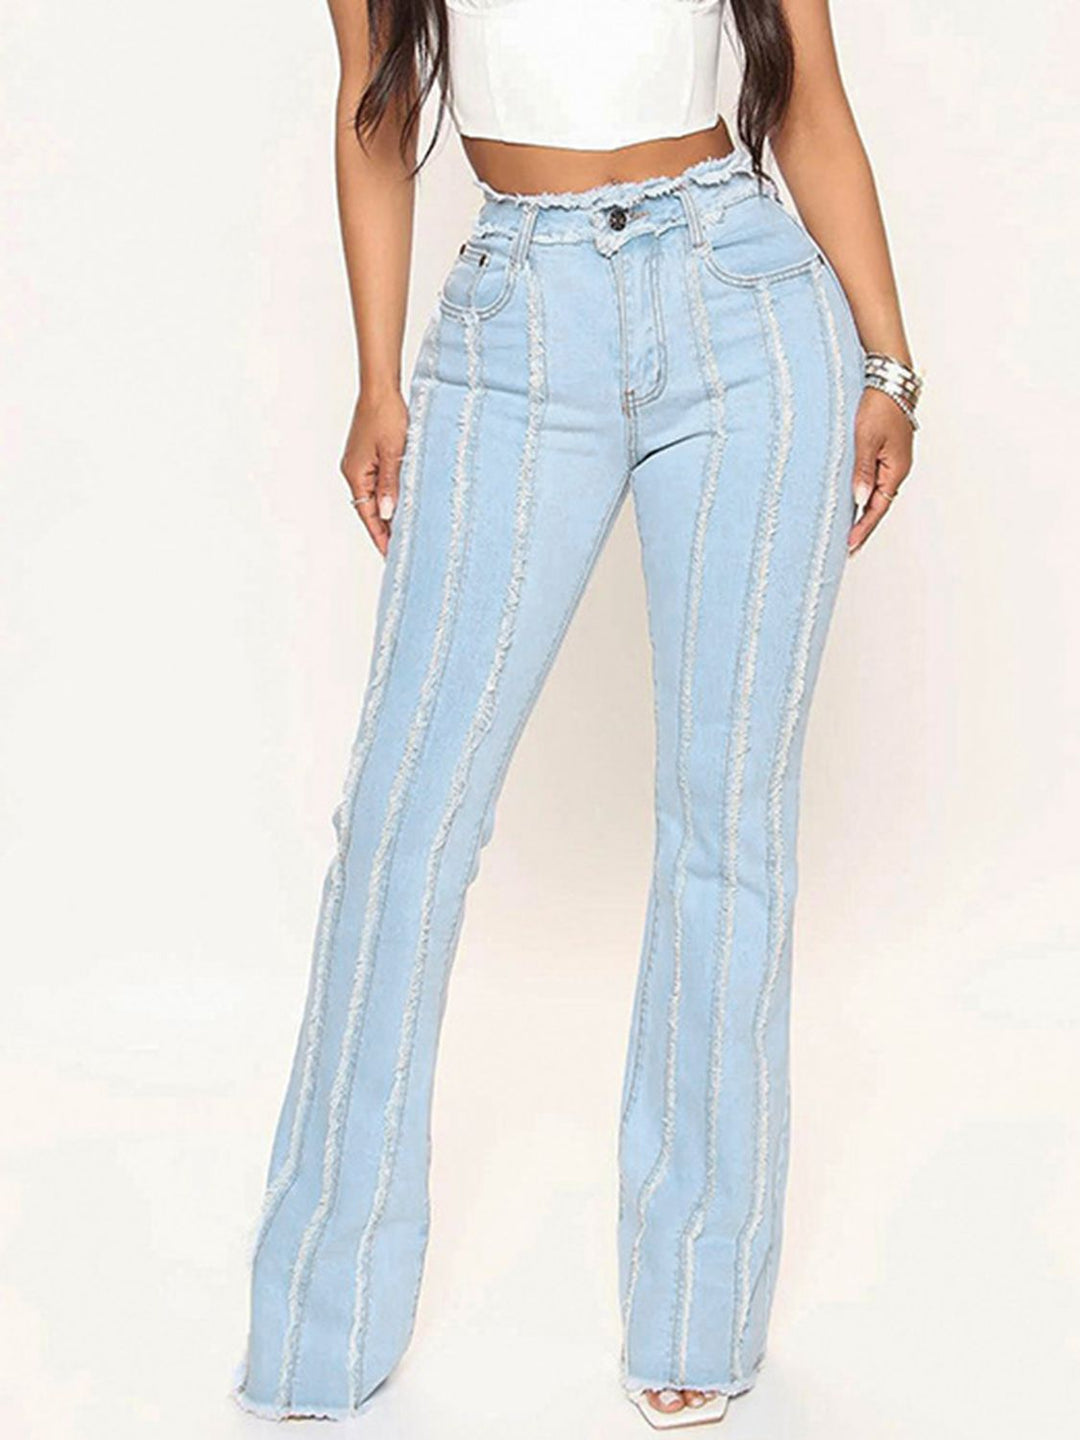 Striped Raw Hem Jeans - Sizes S-2XL